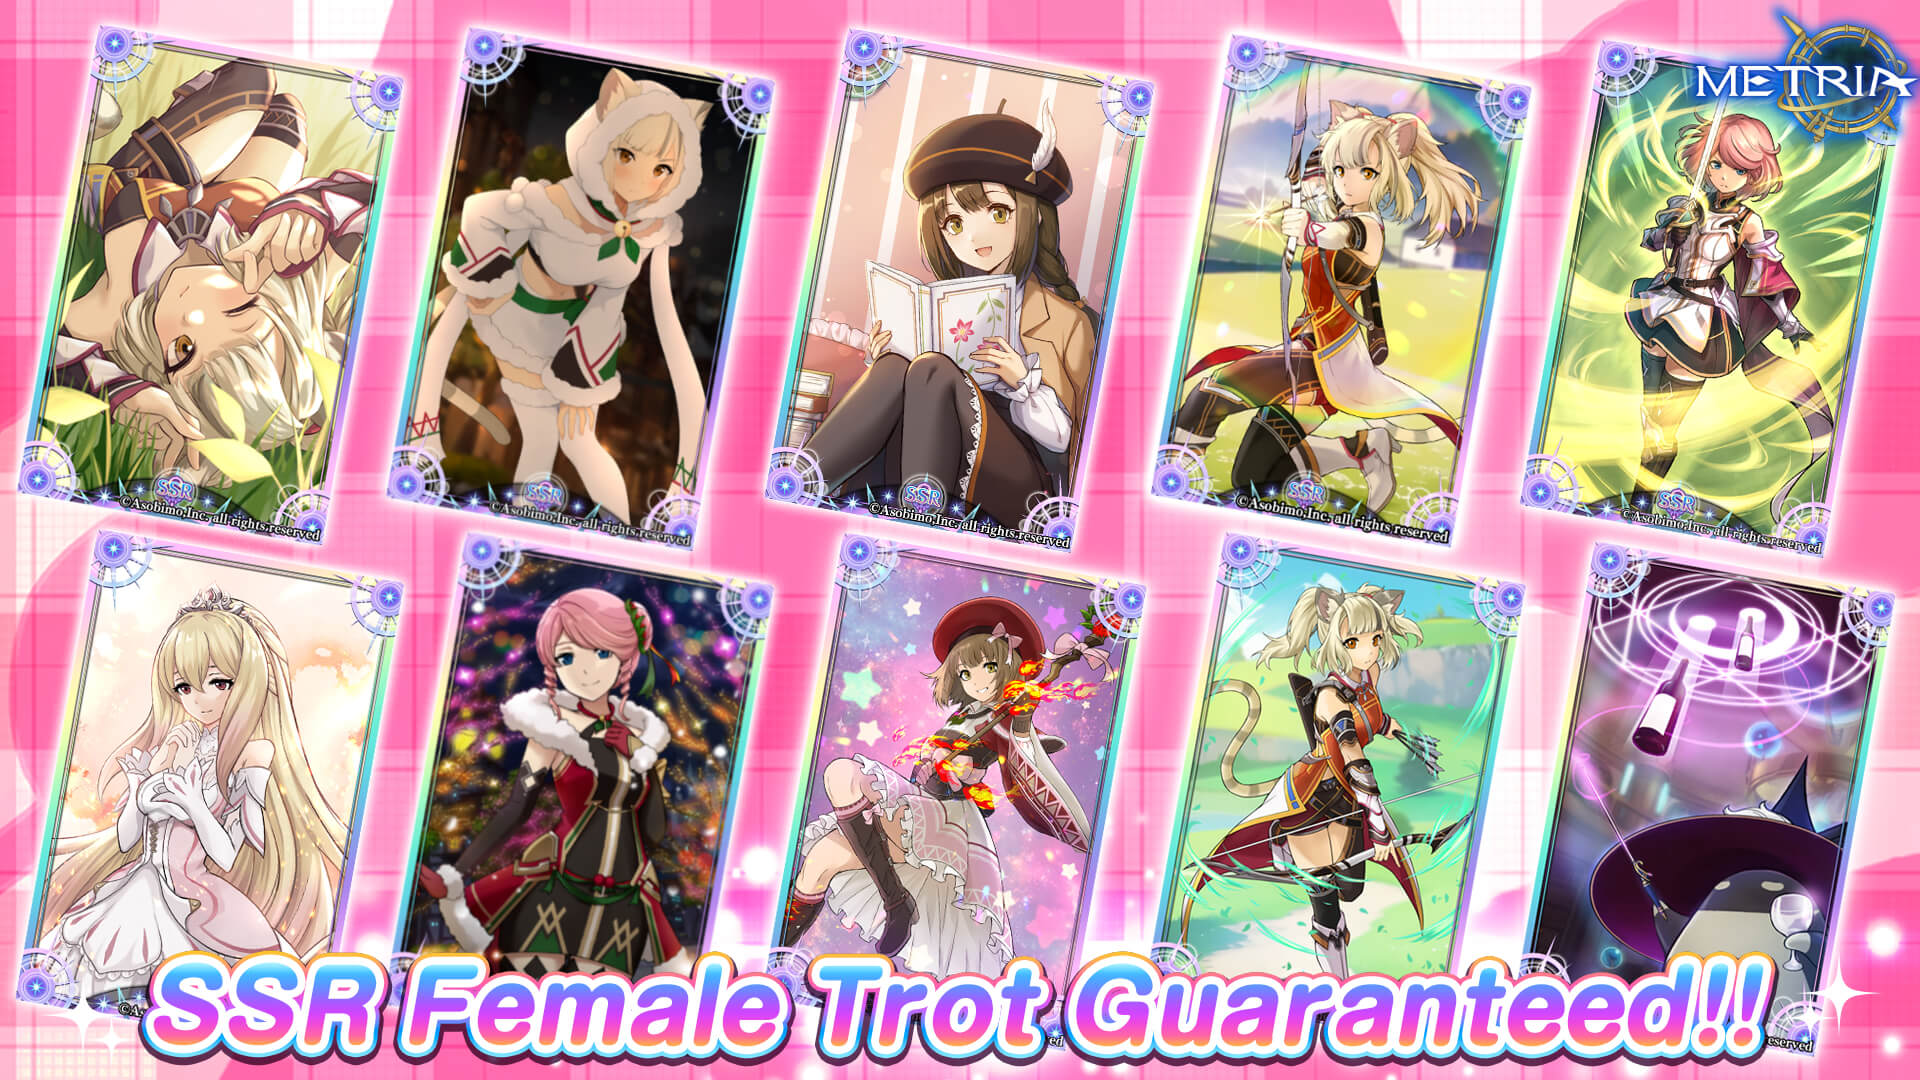 SSR Female Tarot Guaranteed! Guaranteed SSR Tarot Gacha "Valentine's Day" Available!